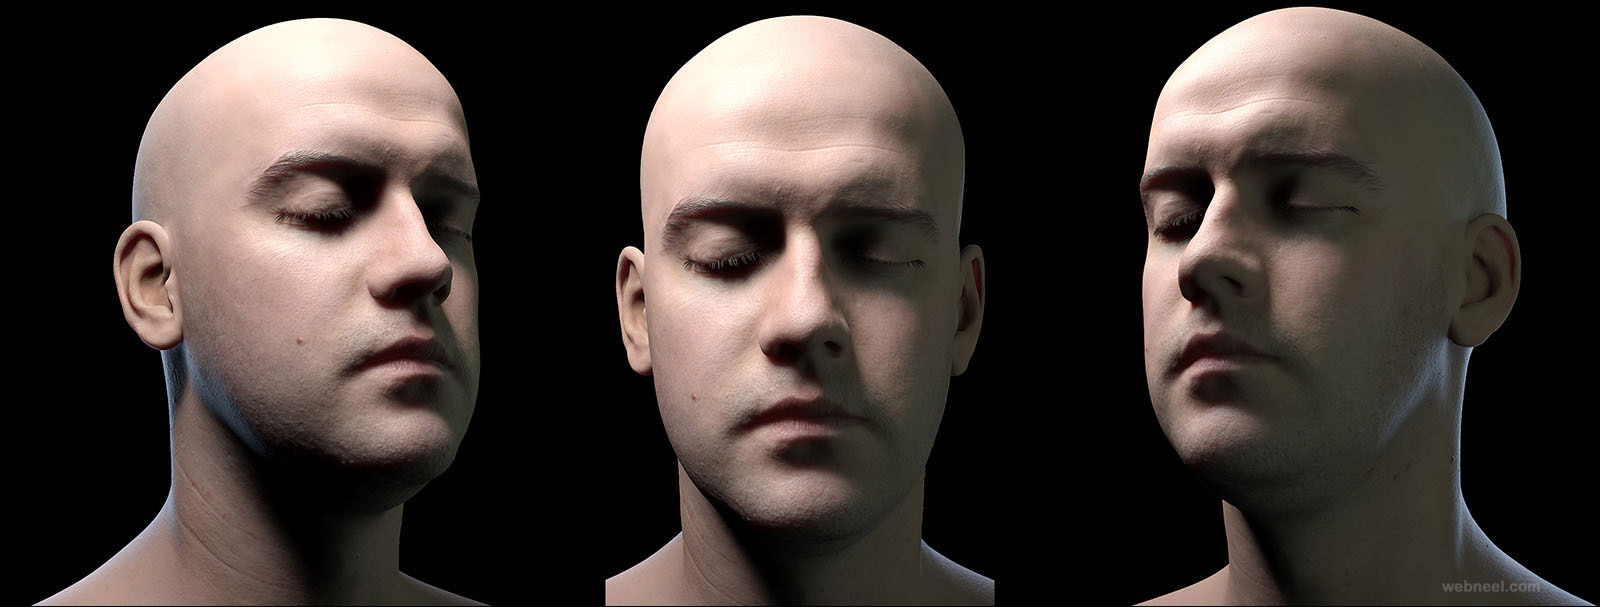 realistic 3d men portrait